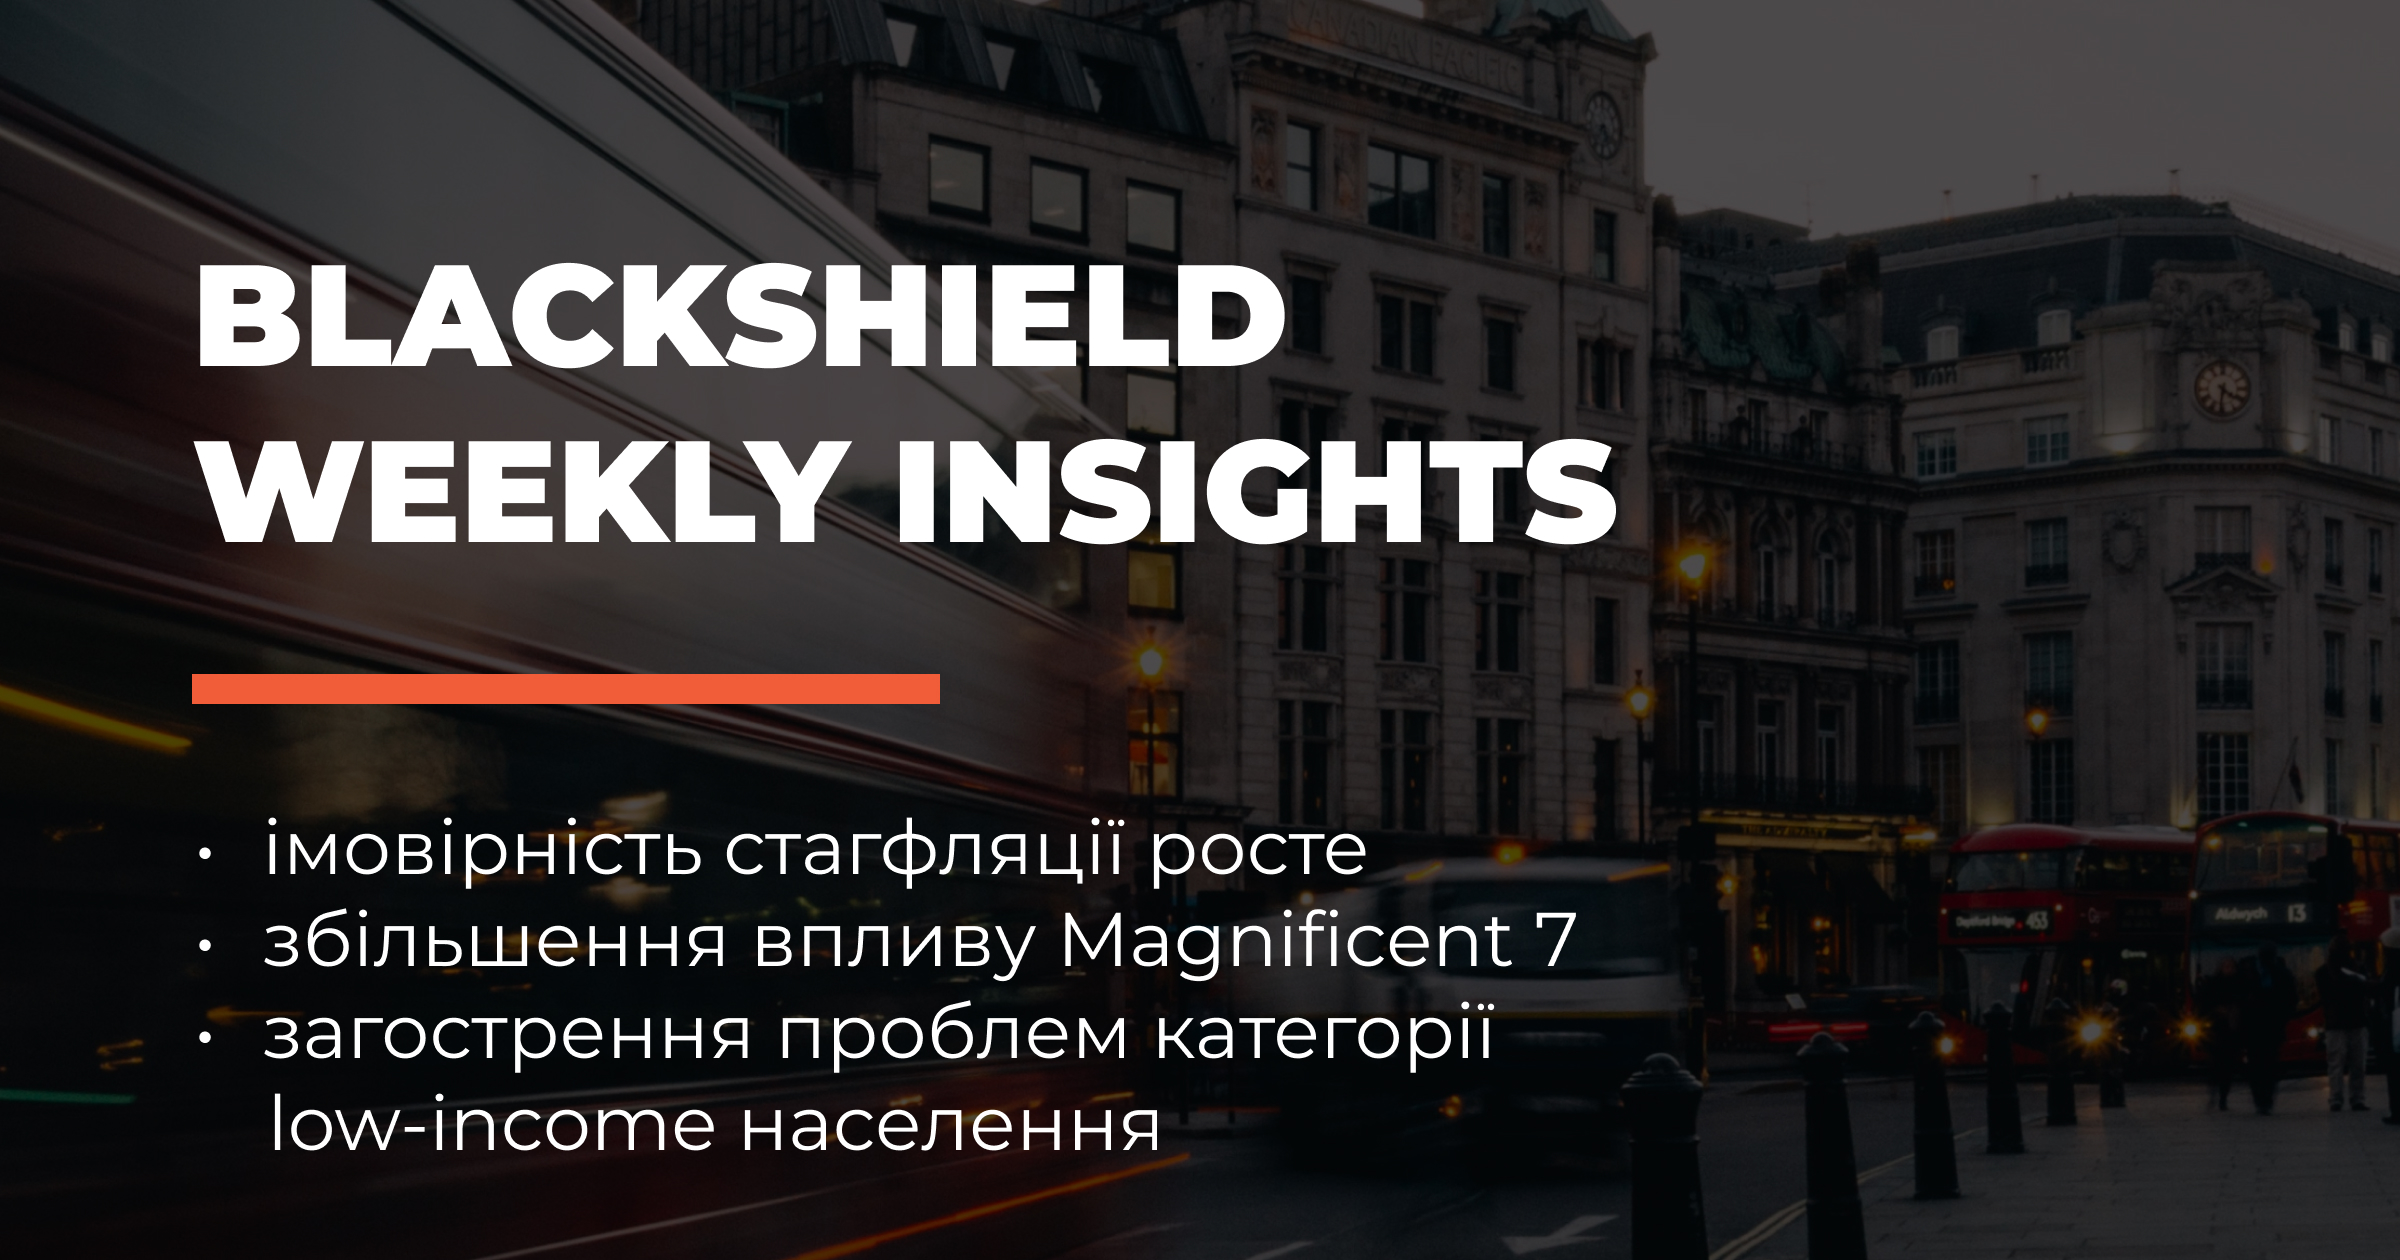 Weekly Insights_UKR